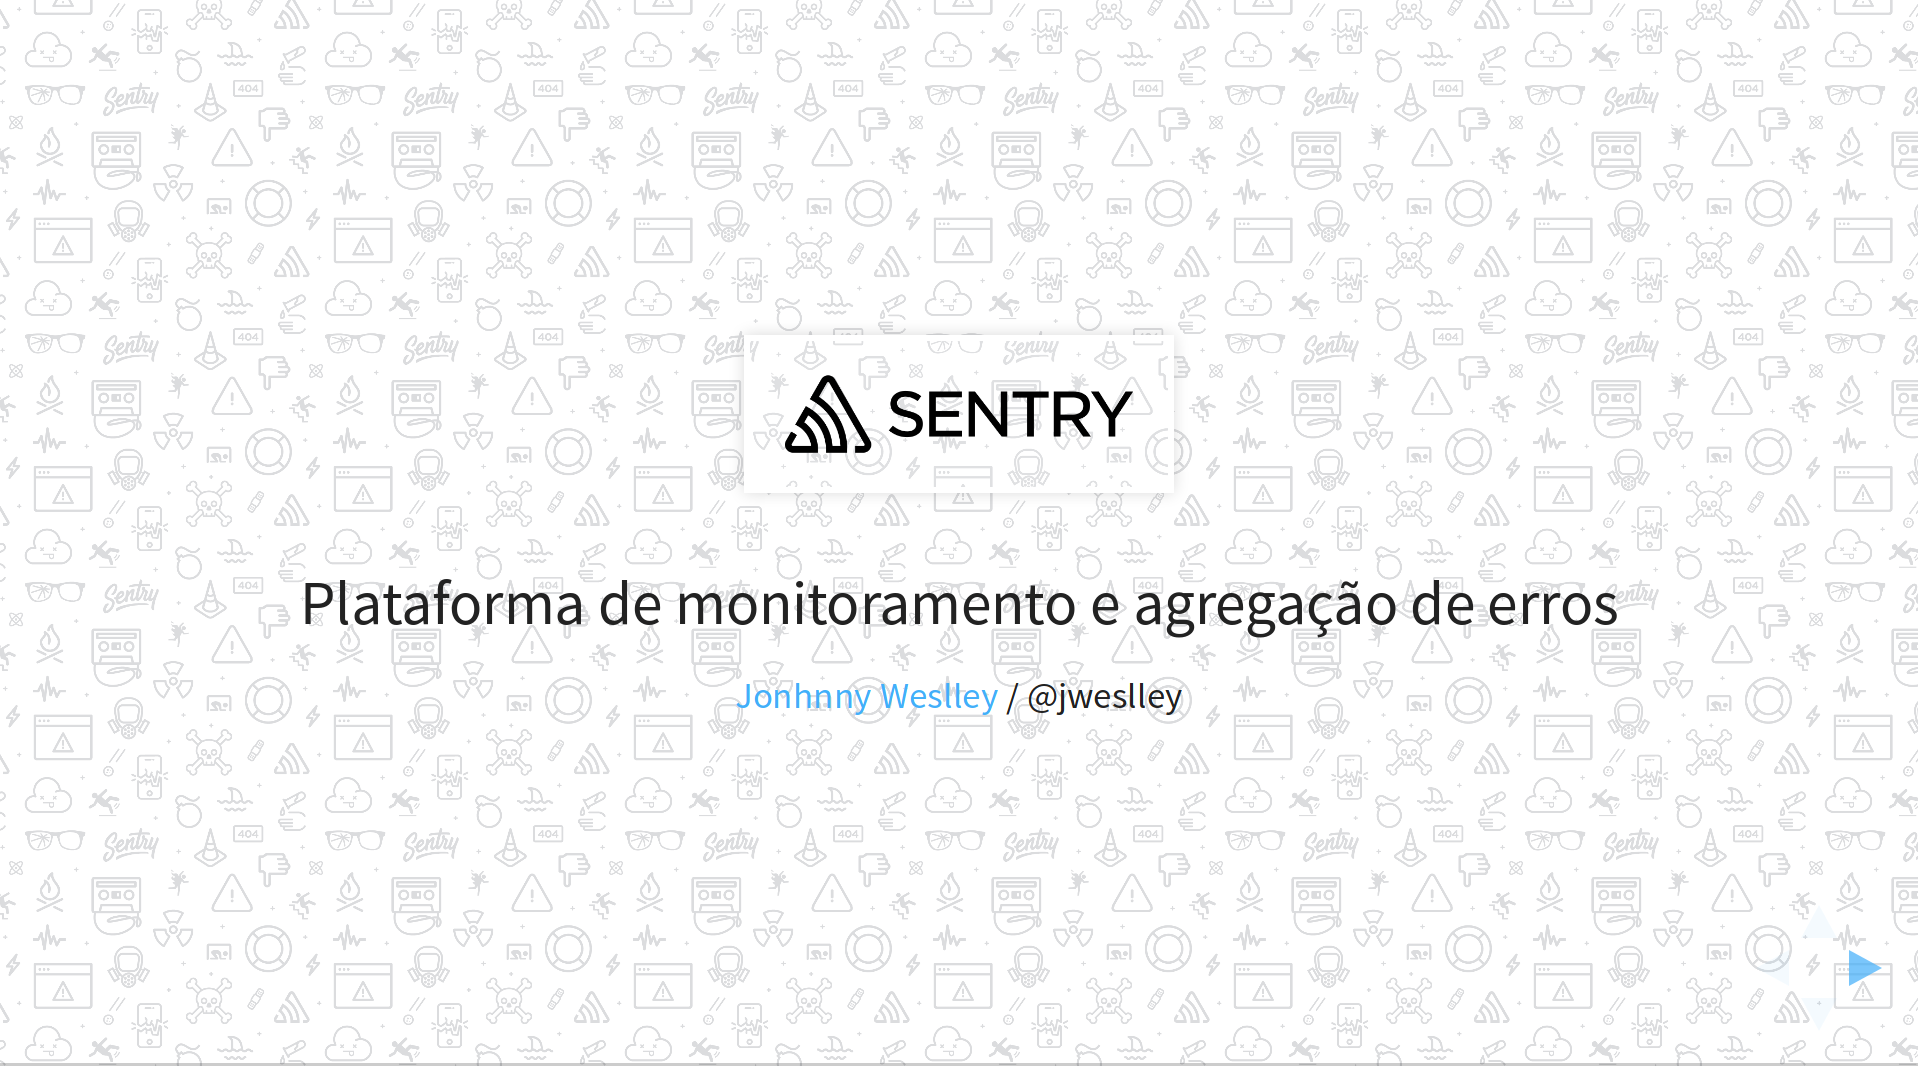 Sentry: Plataforma de monitoramento e agregação de erros